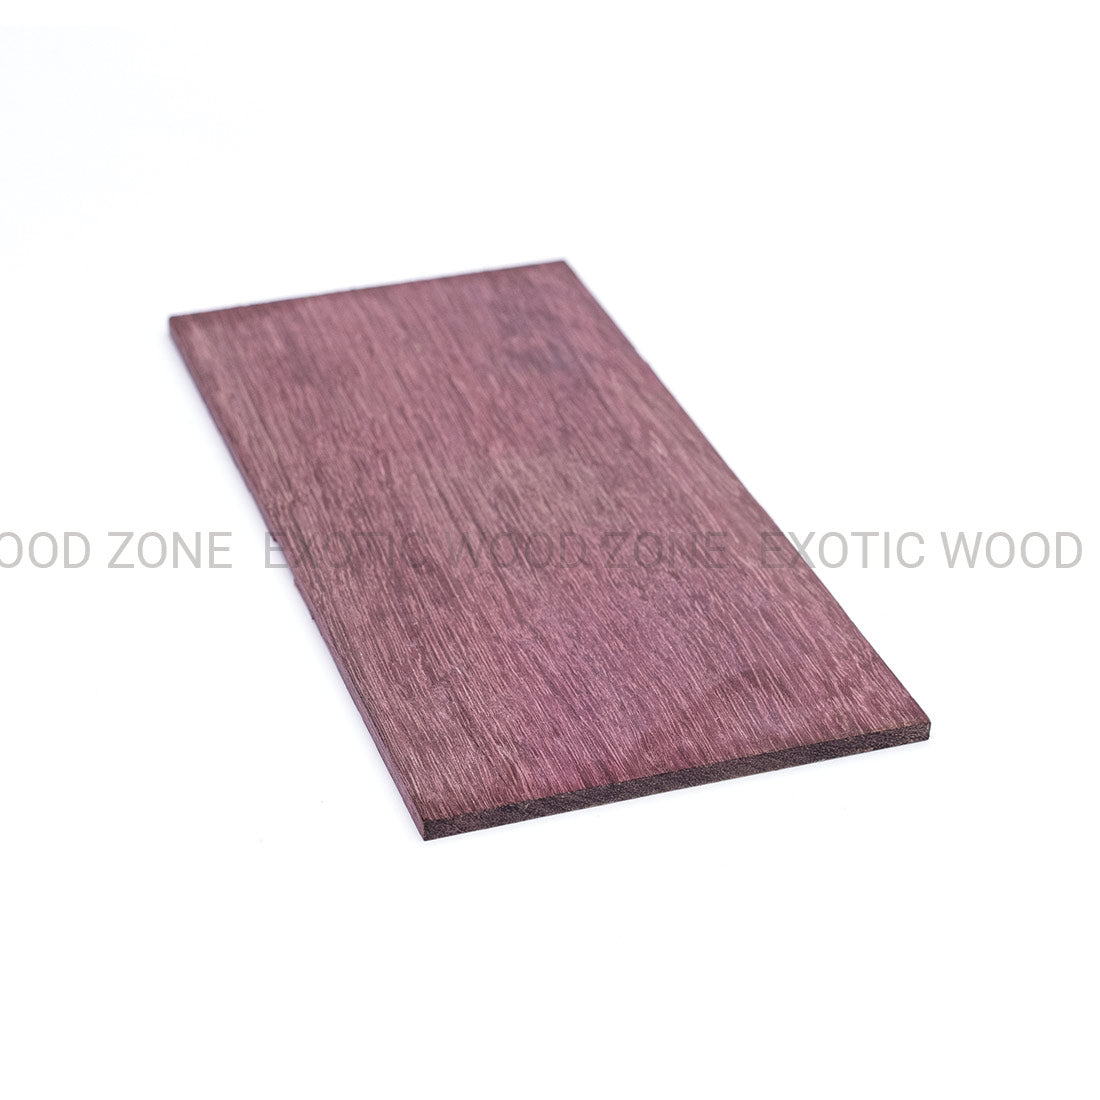 Purpleheart Guitar Headplate Wood Blank Exotic Wood Zone Headplates